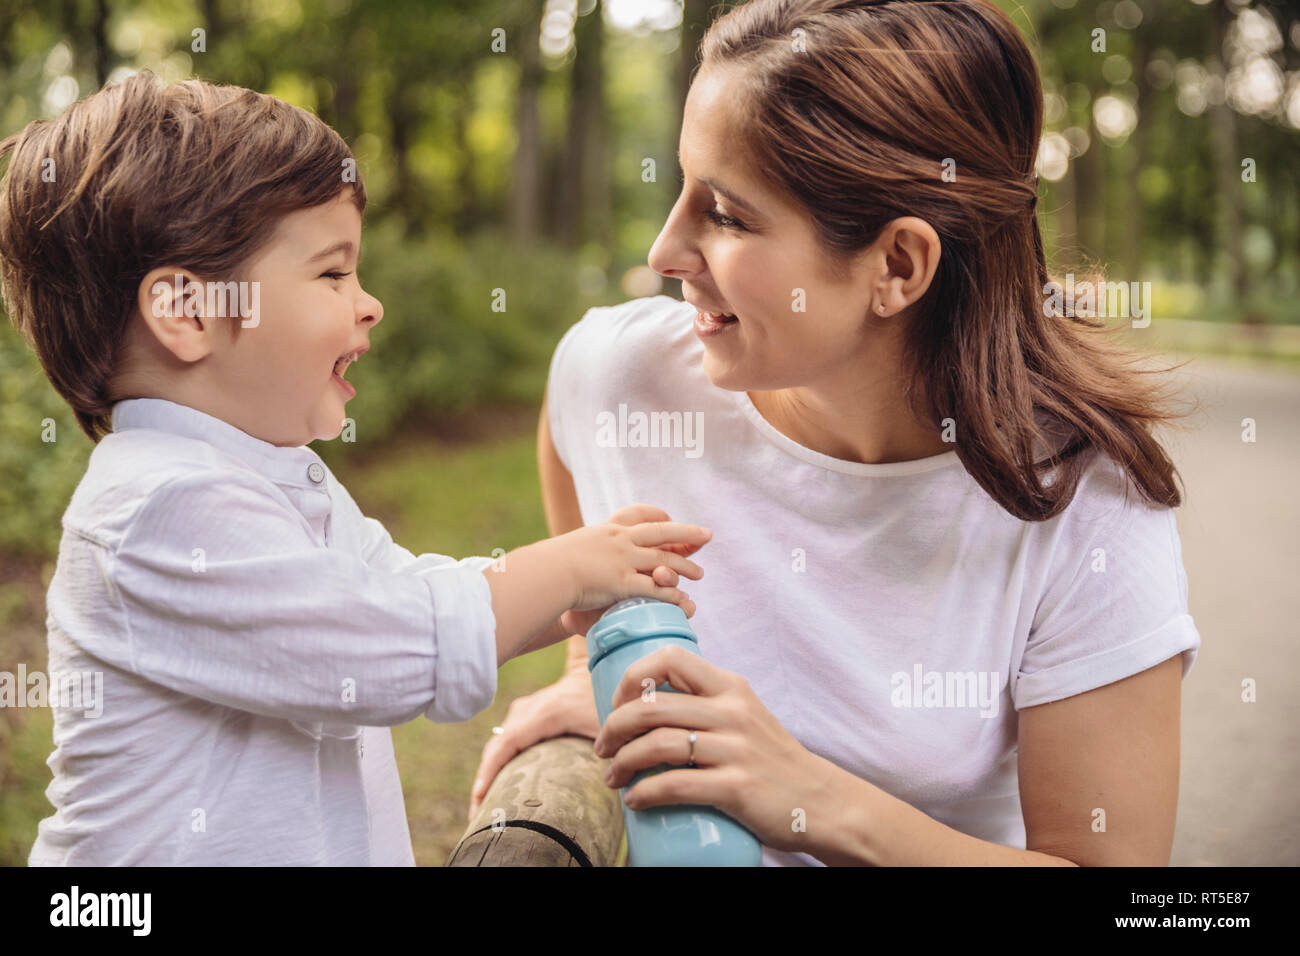 Mutter und ihren kleinen Sohn gemeinsam Spaß haben in einem Park Stockfoto